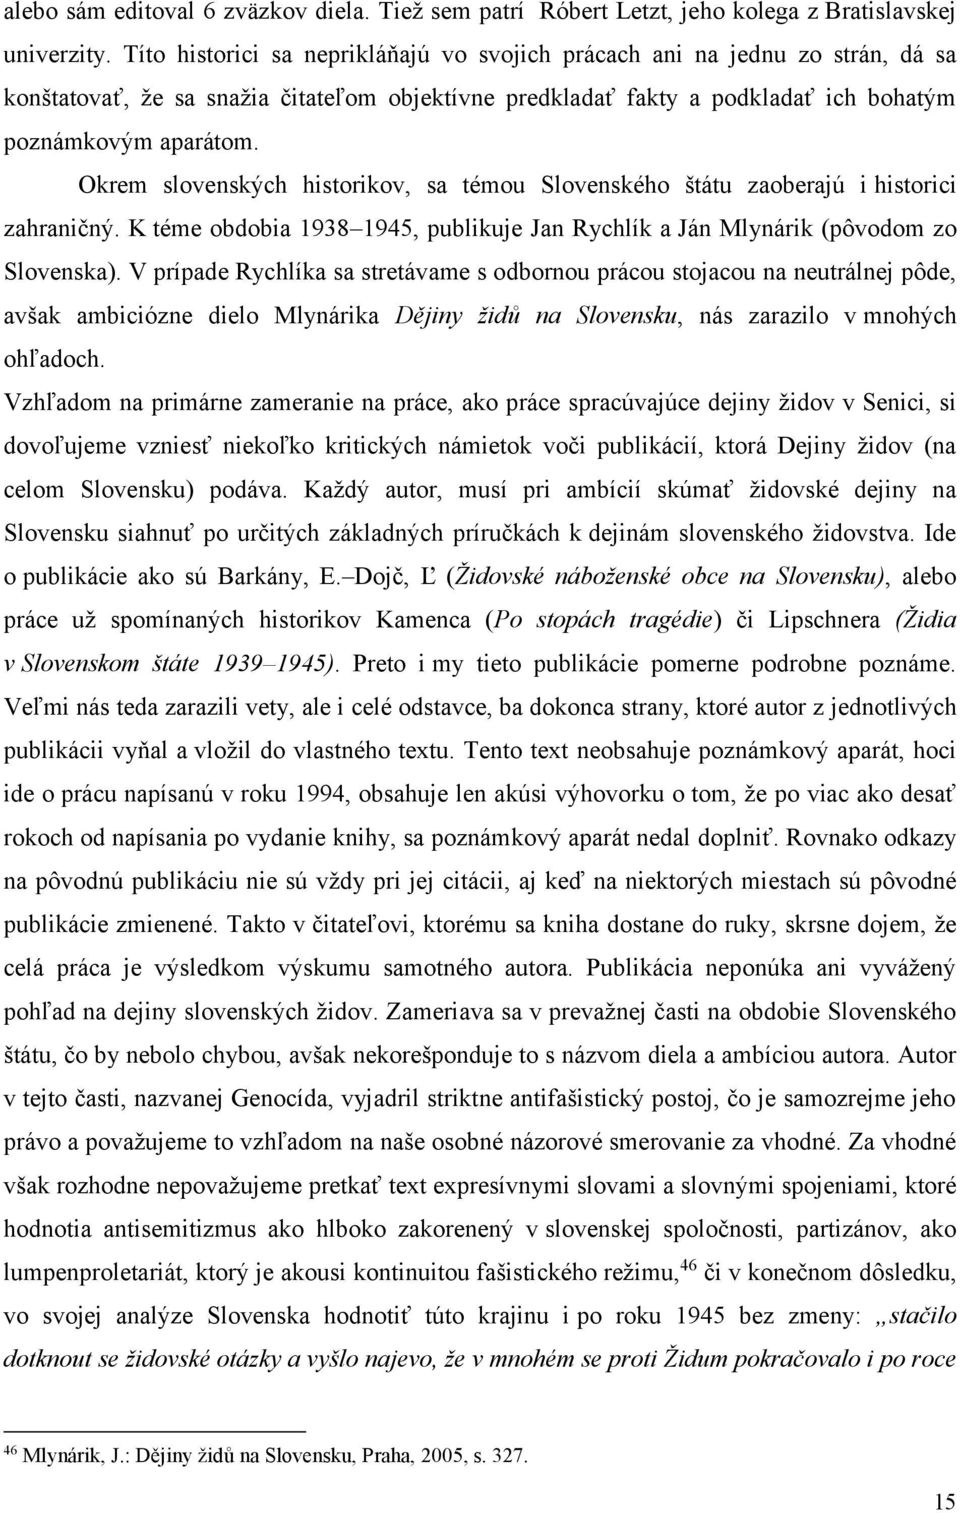 Okrem slovenských historikov, sa témou Slovenského štátu zaoberajú i historici zahraničný. K téme obdobia 1938 1945, publikuje Jan Rychlík a Ján Mlynárik (pôvodom zo Slovenska).